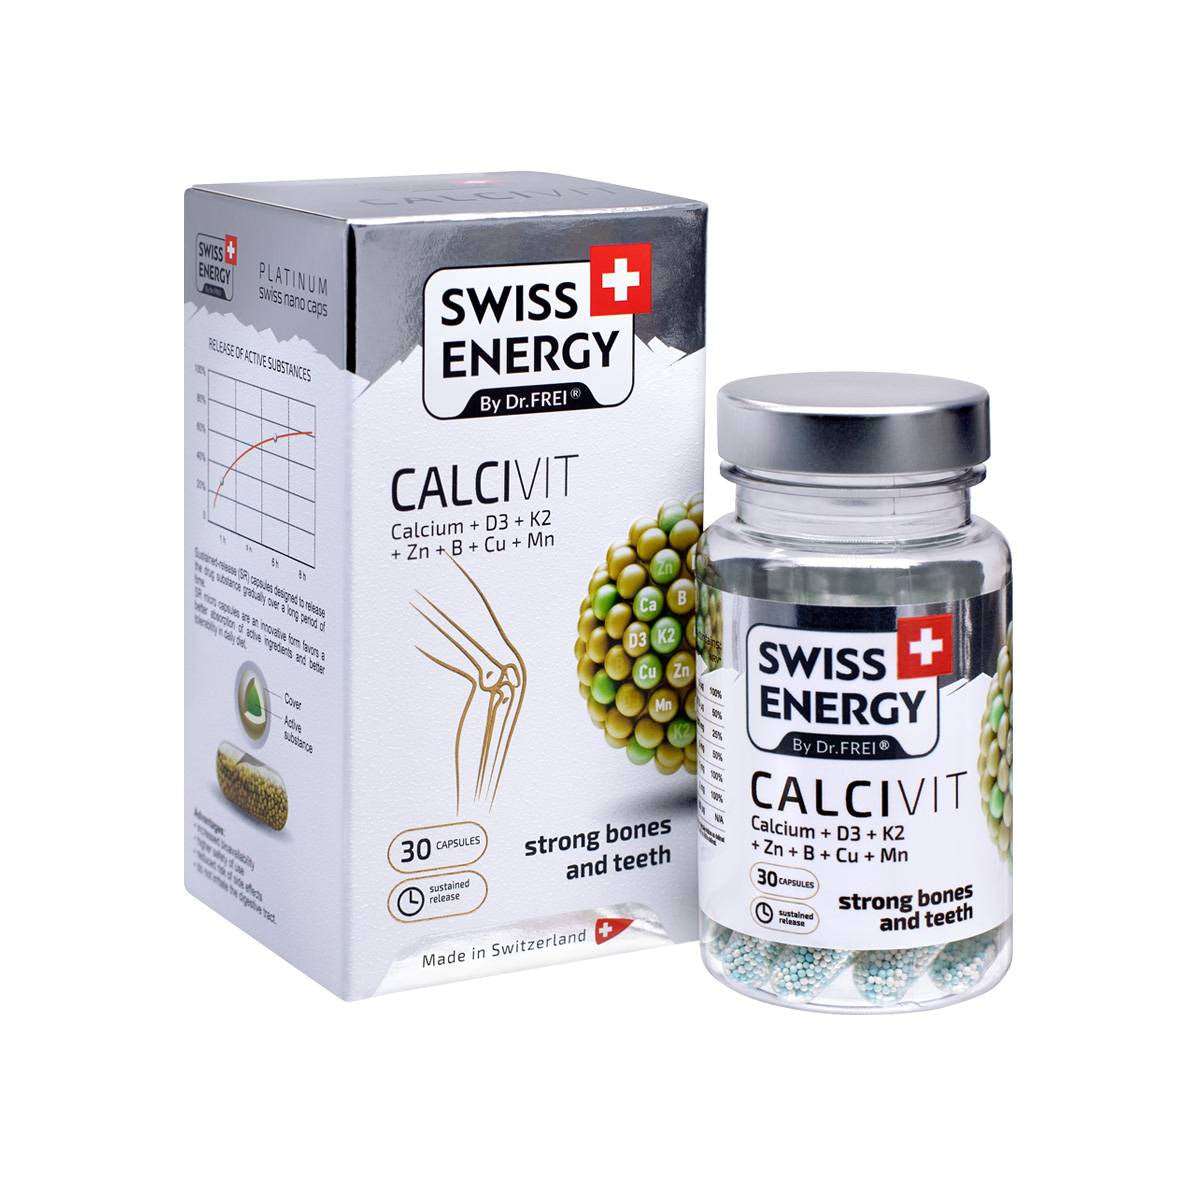 CALCIVIT (Calcium + Vitamin D3 + Vitamin K2) - 30 sustained-release capsules